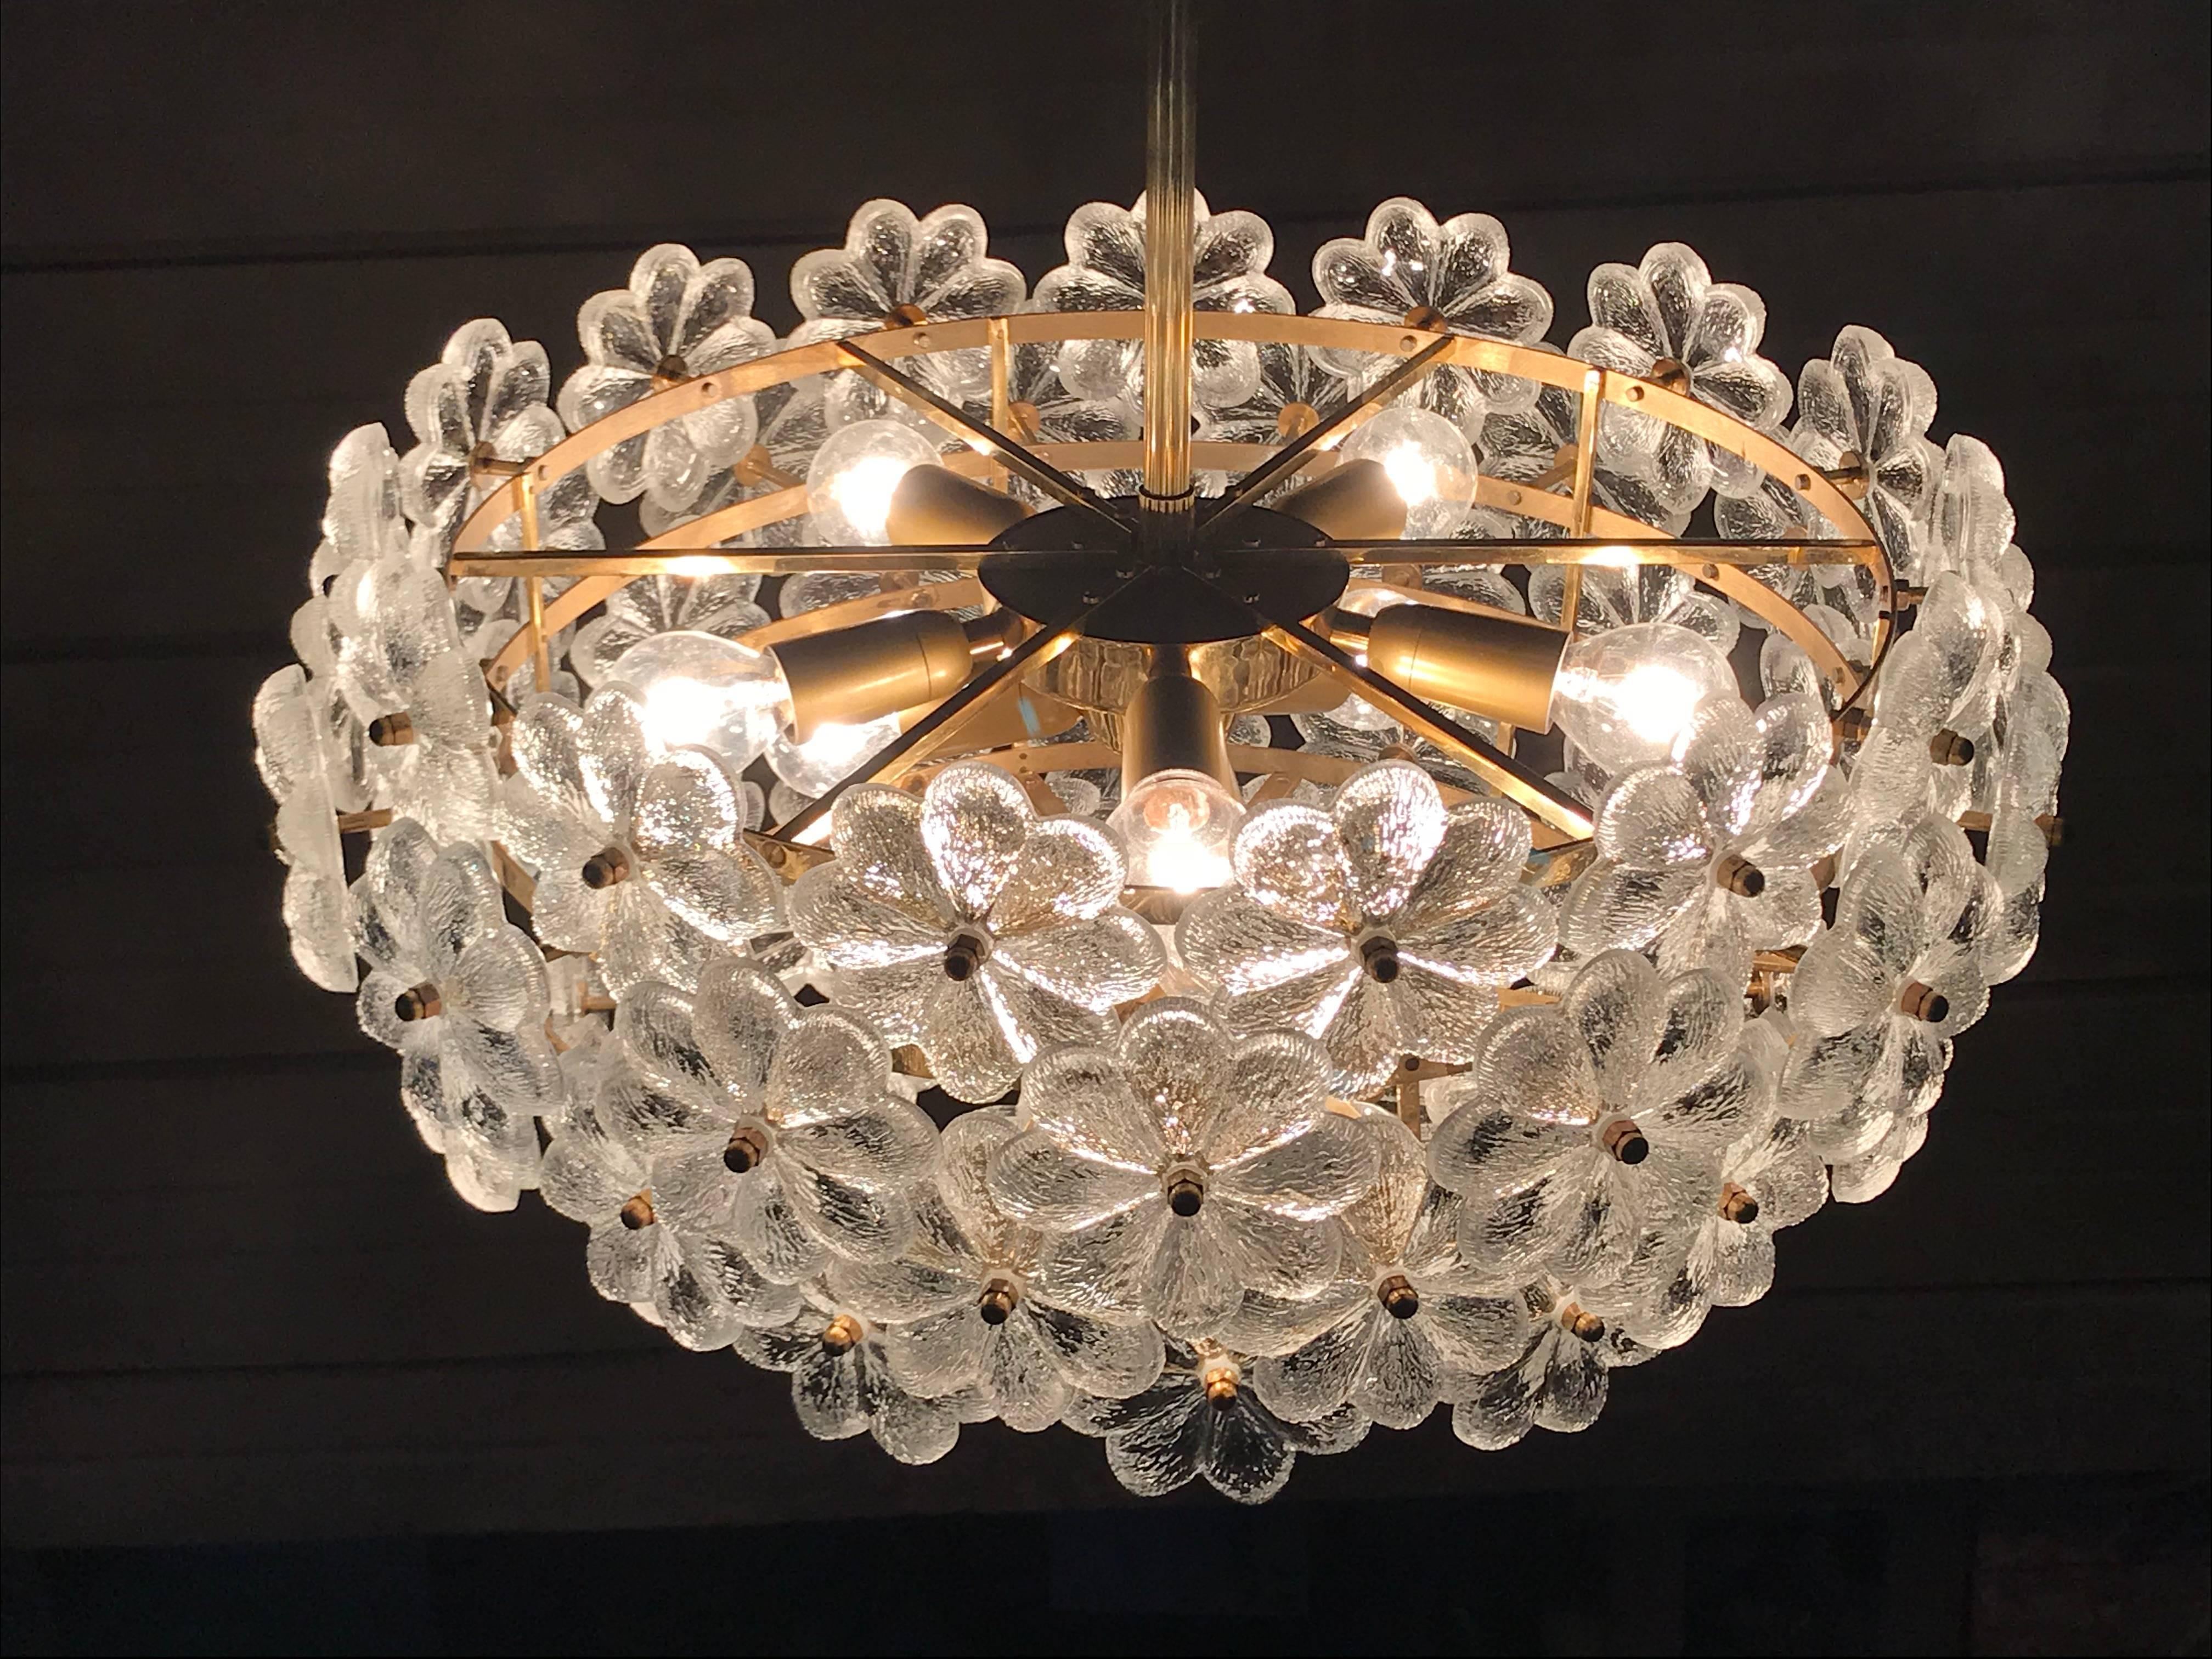 Ernst Palme lustre sputnik en verre floral.
Il peut contenir huit ampoules E14 jusqu'à 40 watts (incluses).
Le diamètre est de 21 pouces par 10 pouces de haut, la hauteur totale avec la tige est de 32